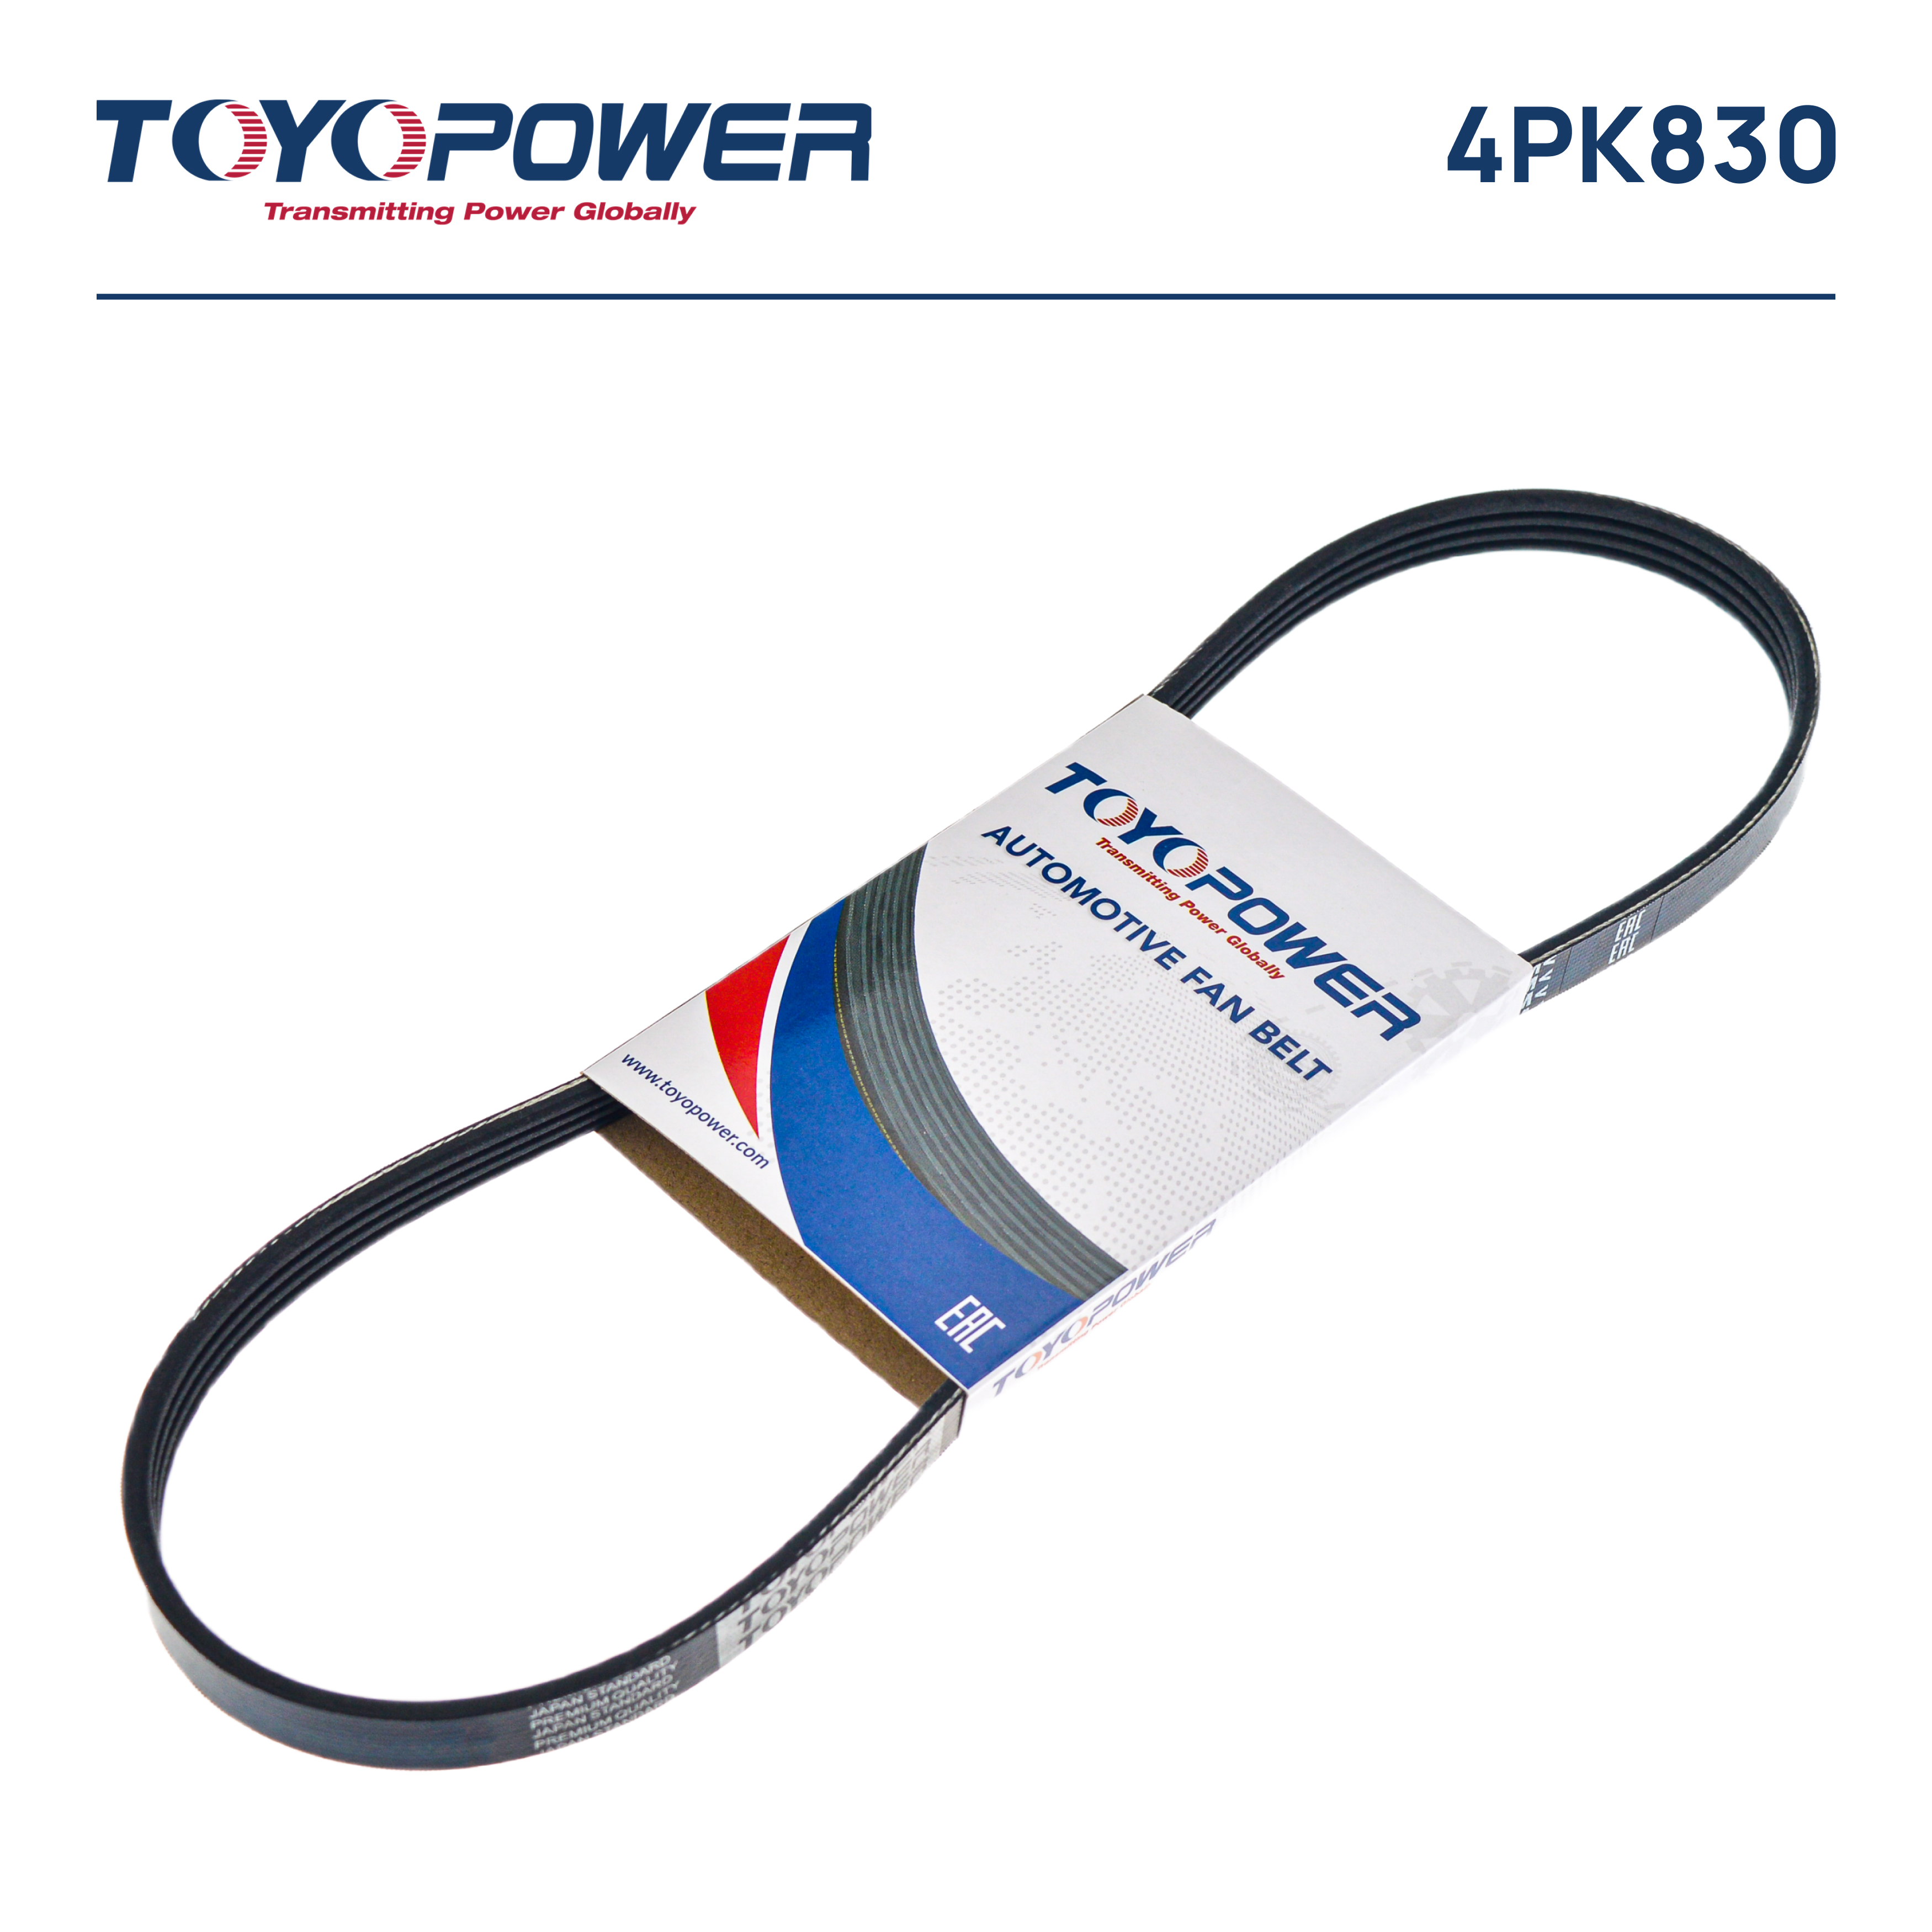 Ремень поликлиновый - Toyopower 4PK830